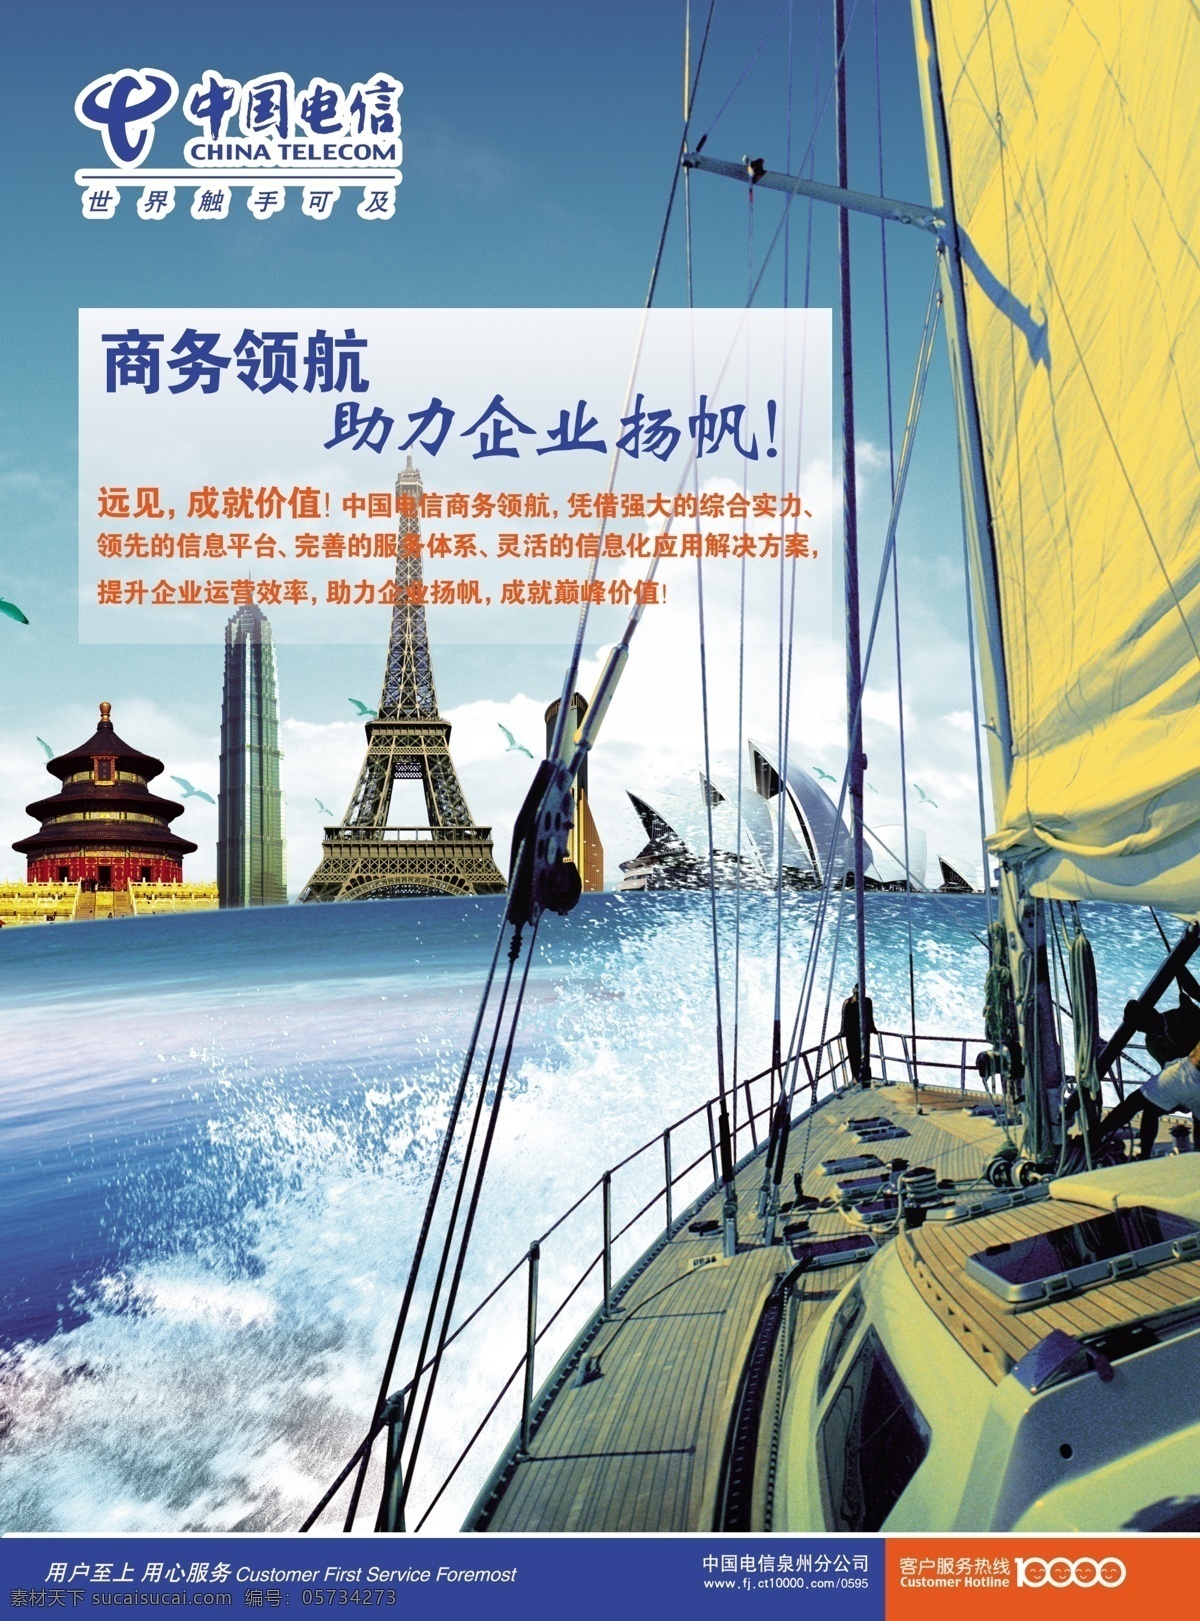 标志建筑 创意元素 地标 帆船 广告设计模板 海洋 航行 中国电信 天坛 铁塔 世界 源文件 其他海报设计